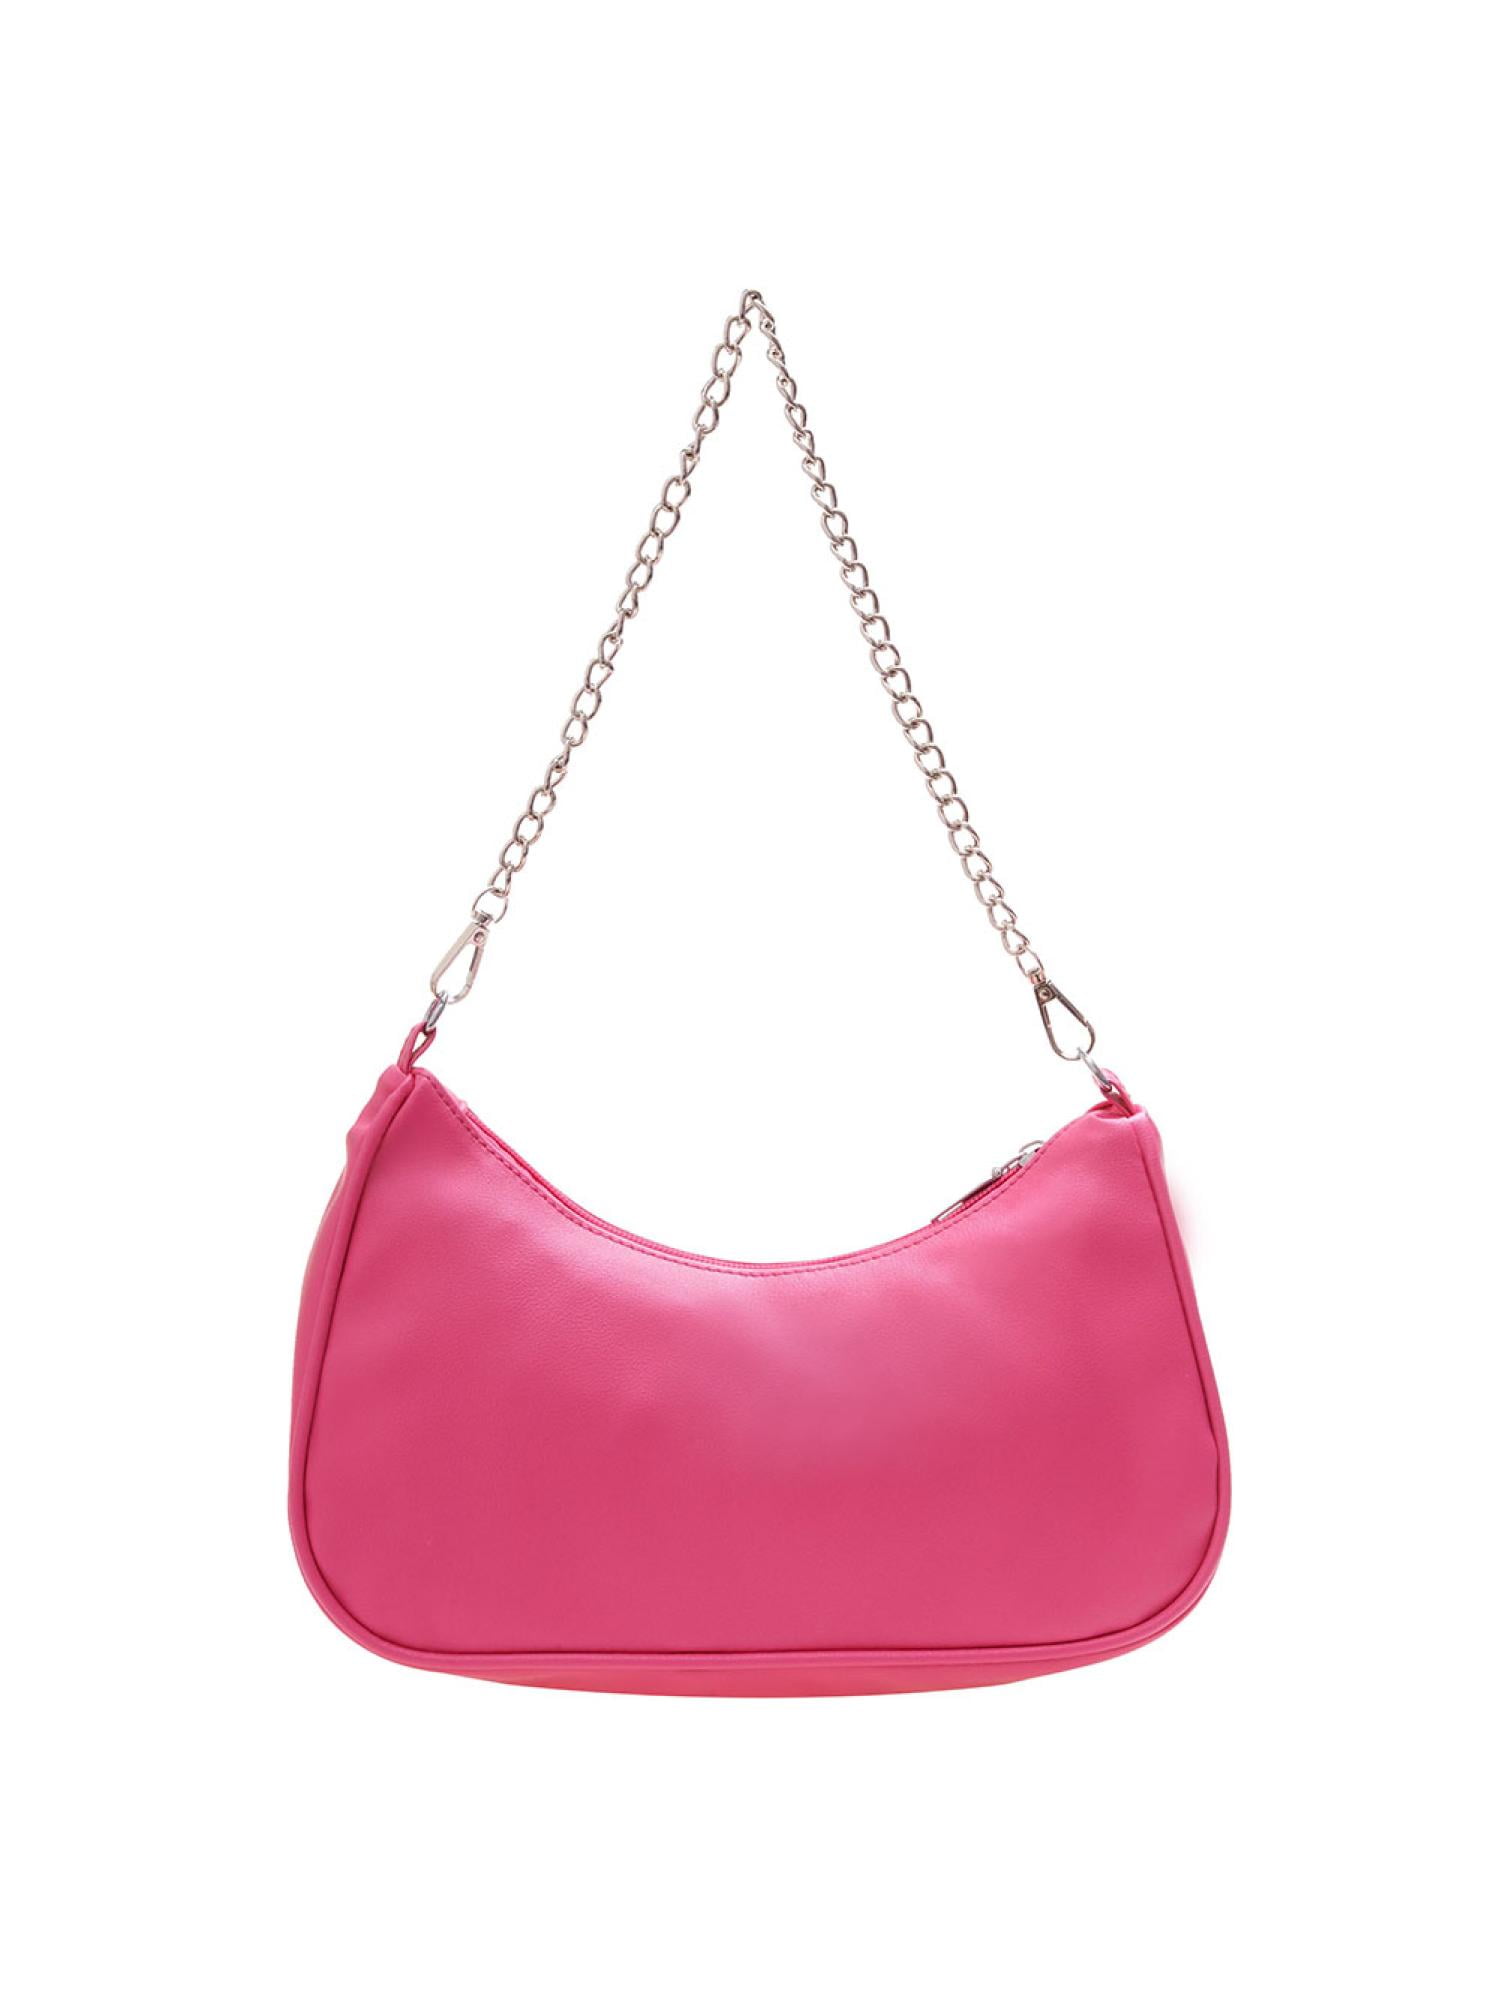 Women's Mini Solid Color Chain Shoulder Bag